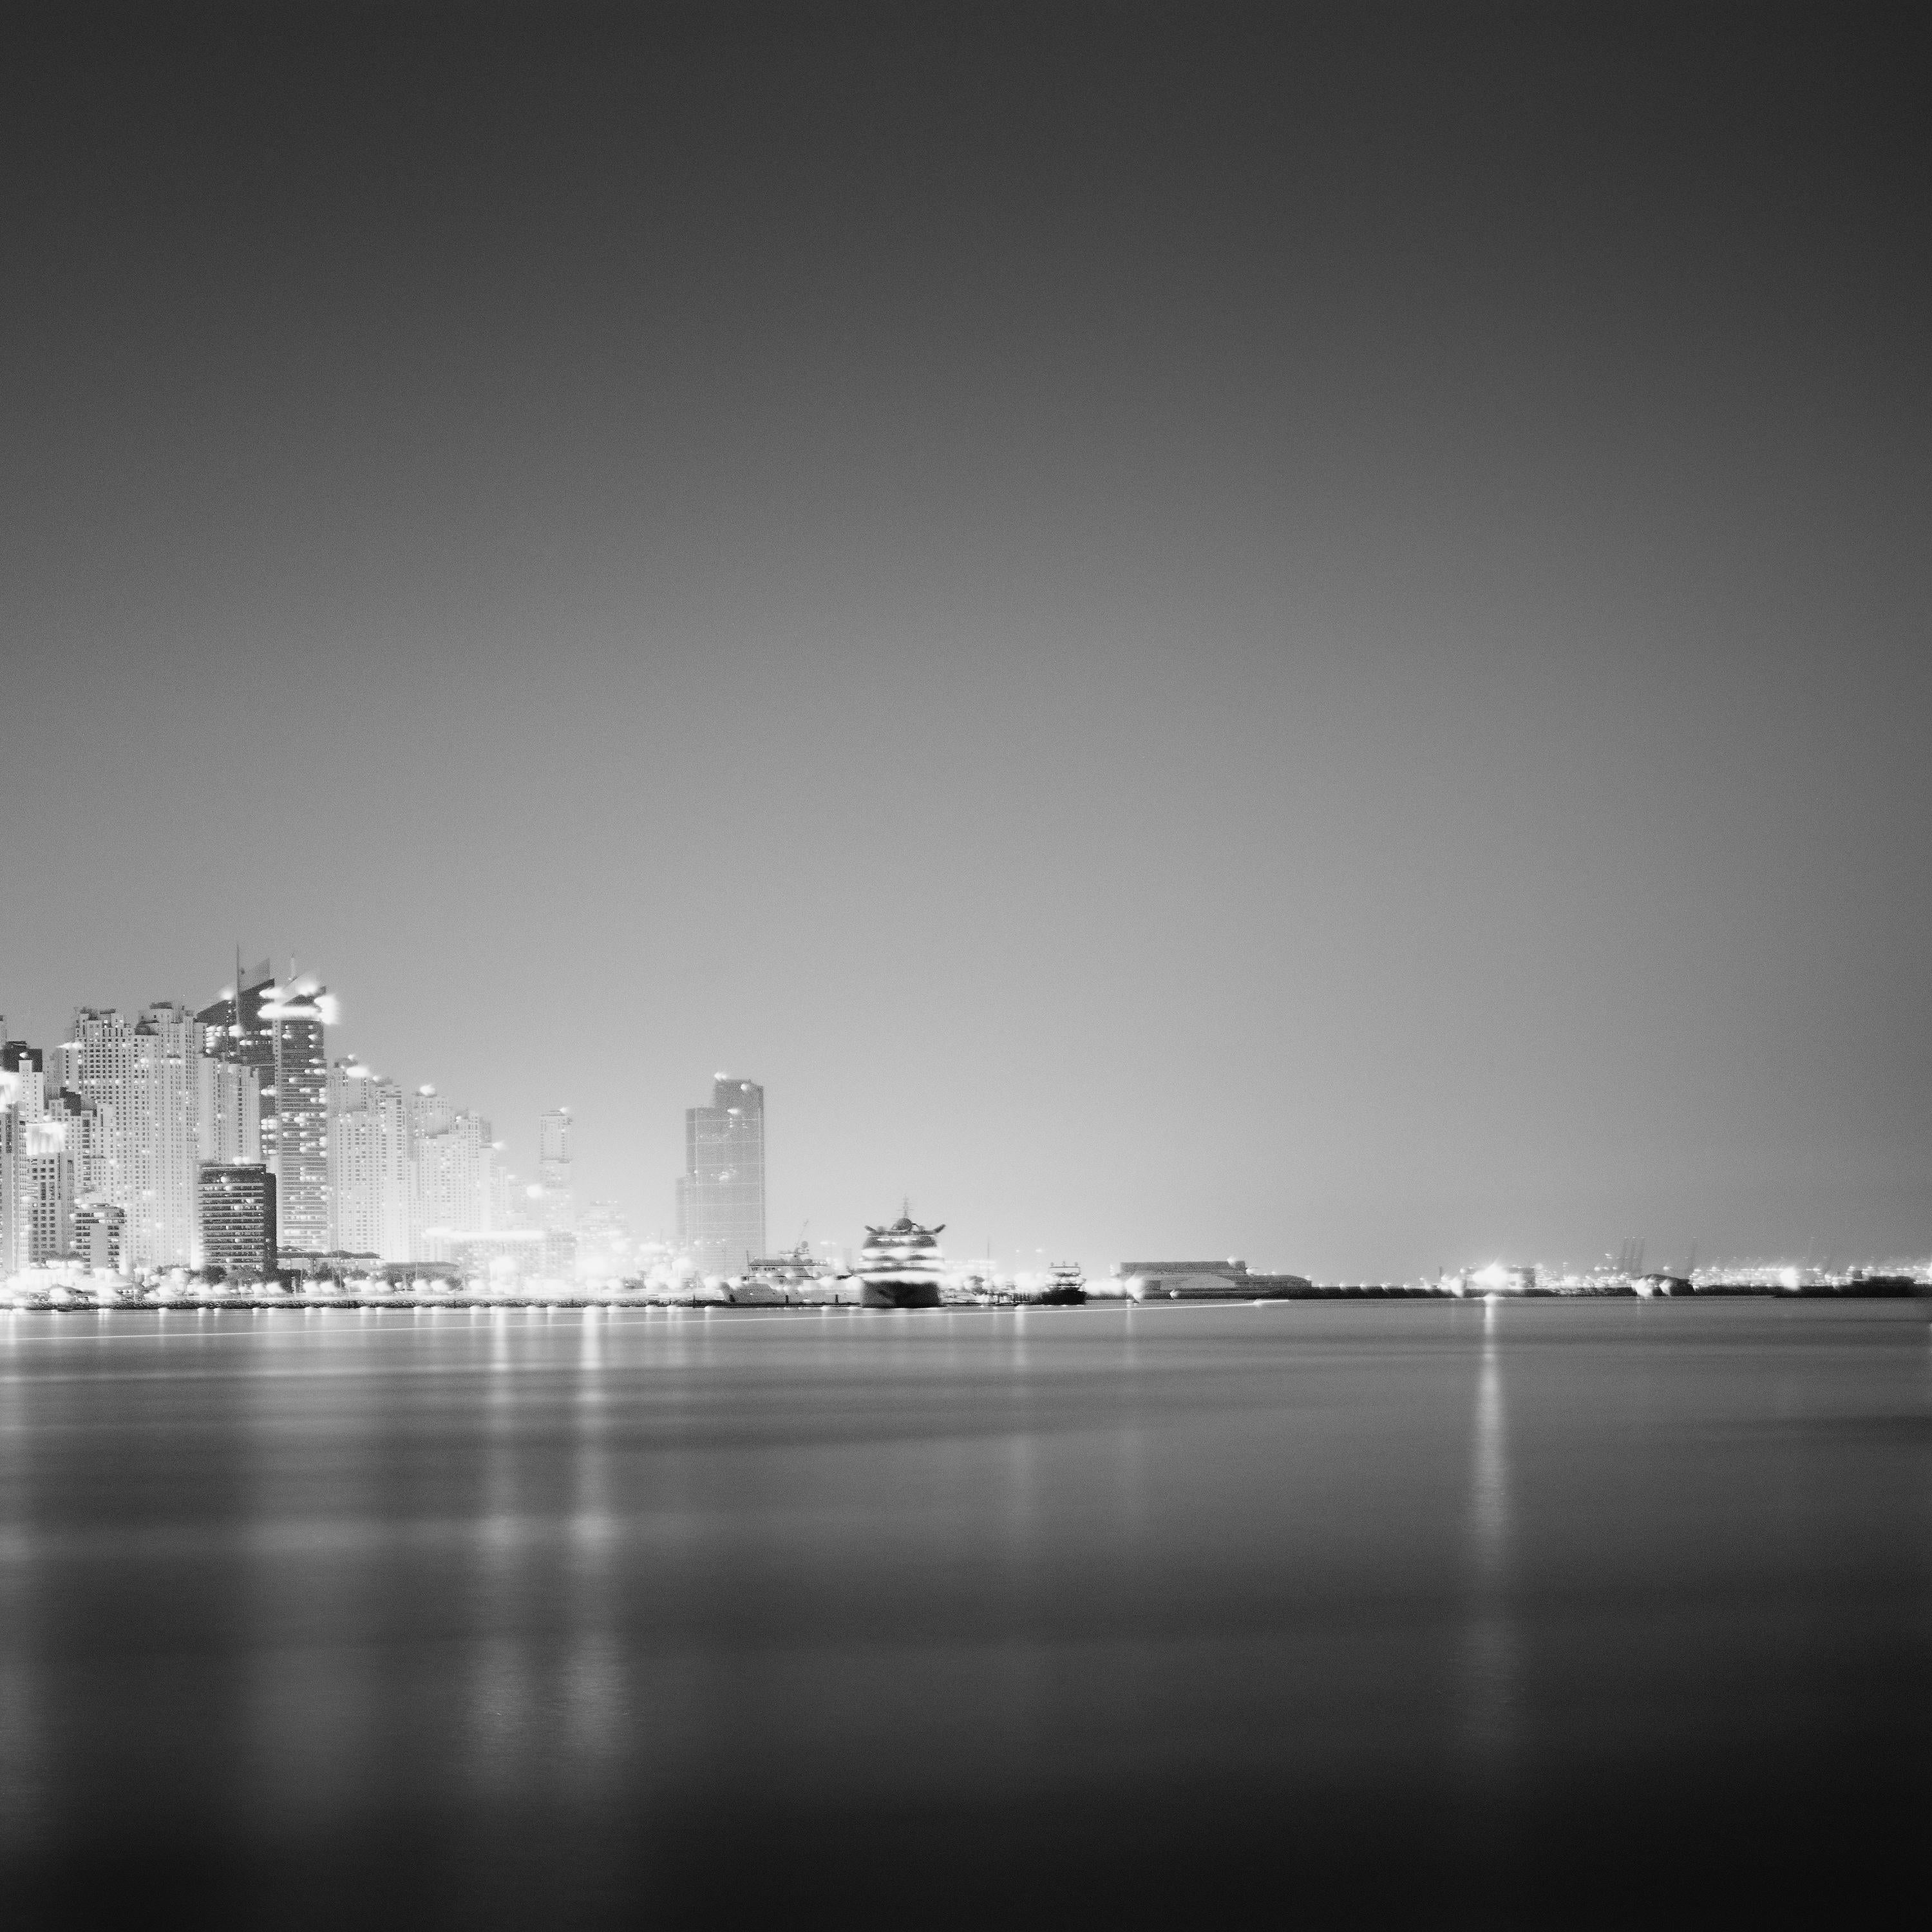 Marina Night Panorama, Skyscraper, Dubai, black and white cityscape photo print For Sale 4